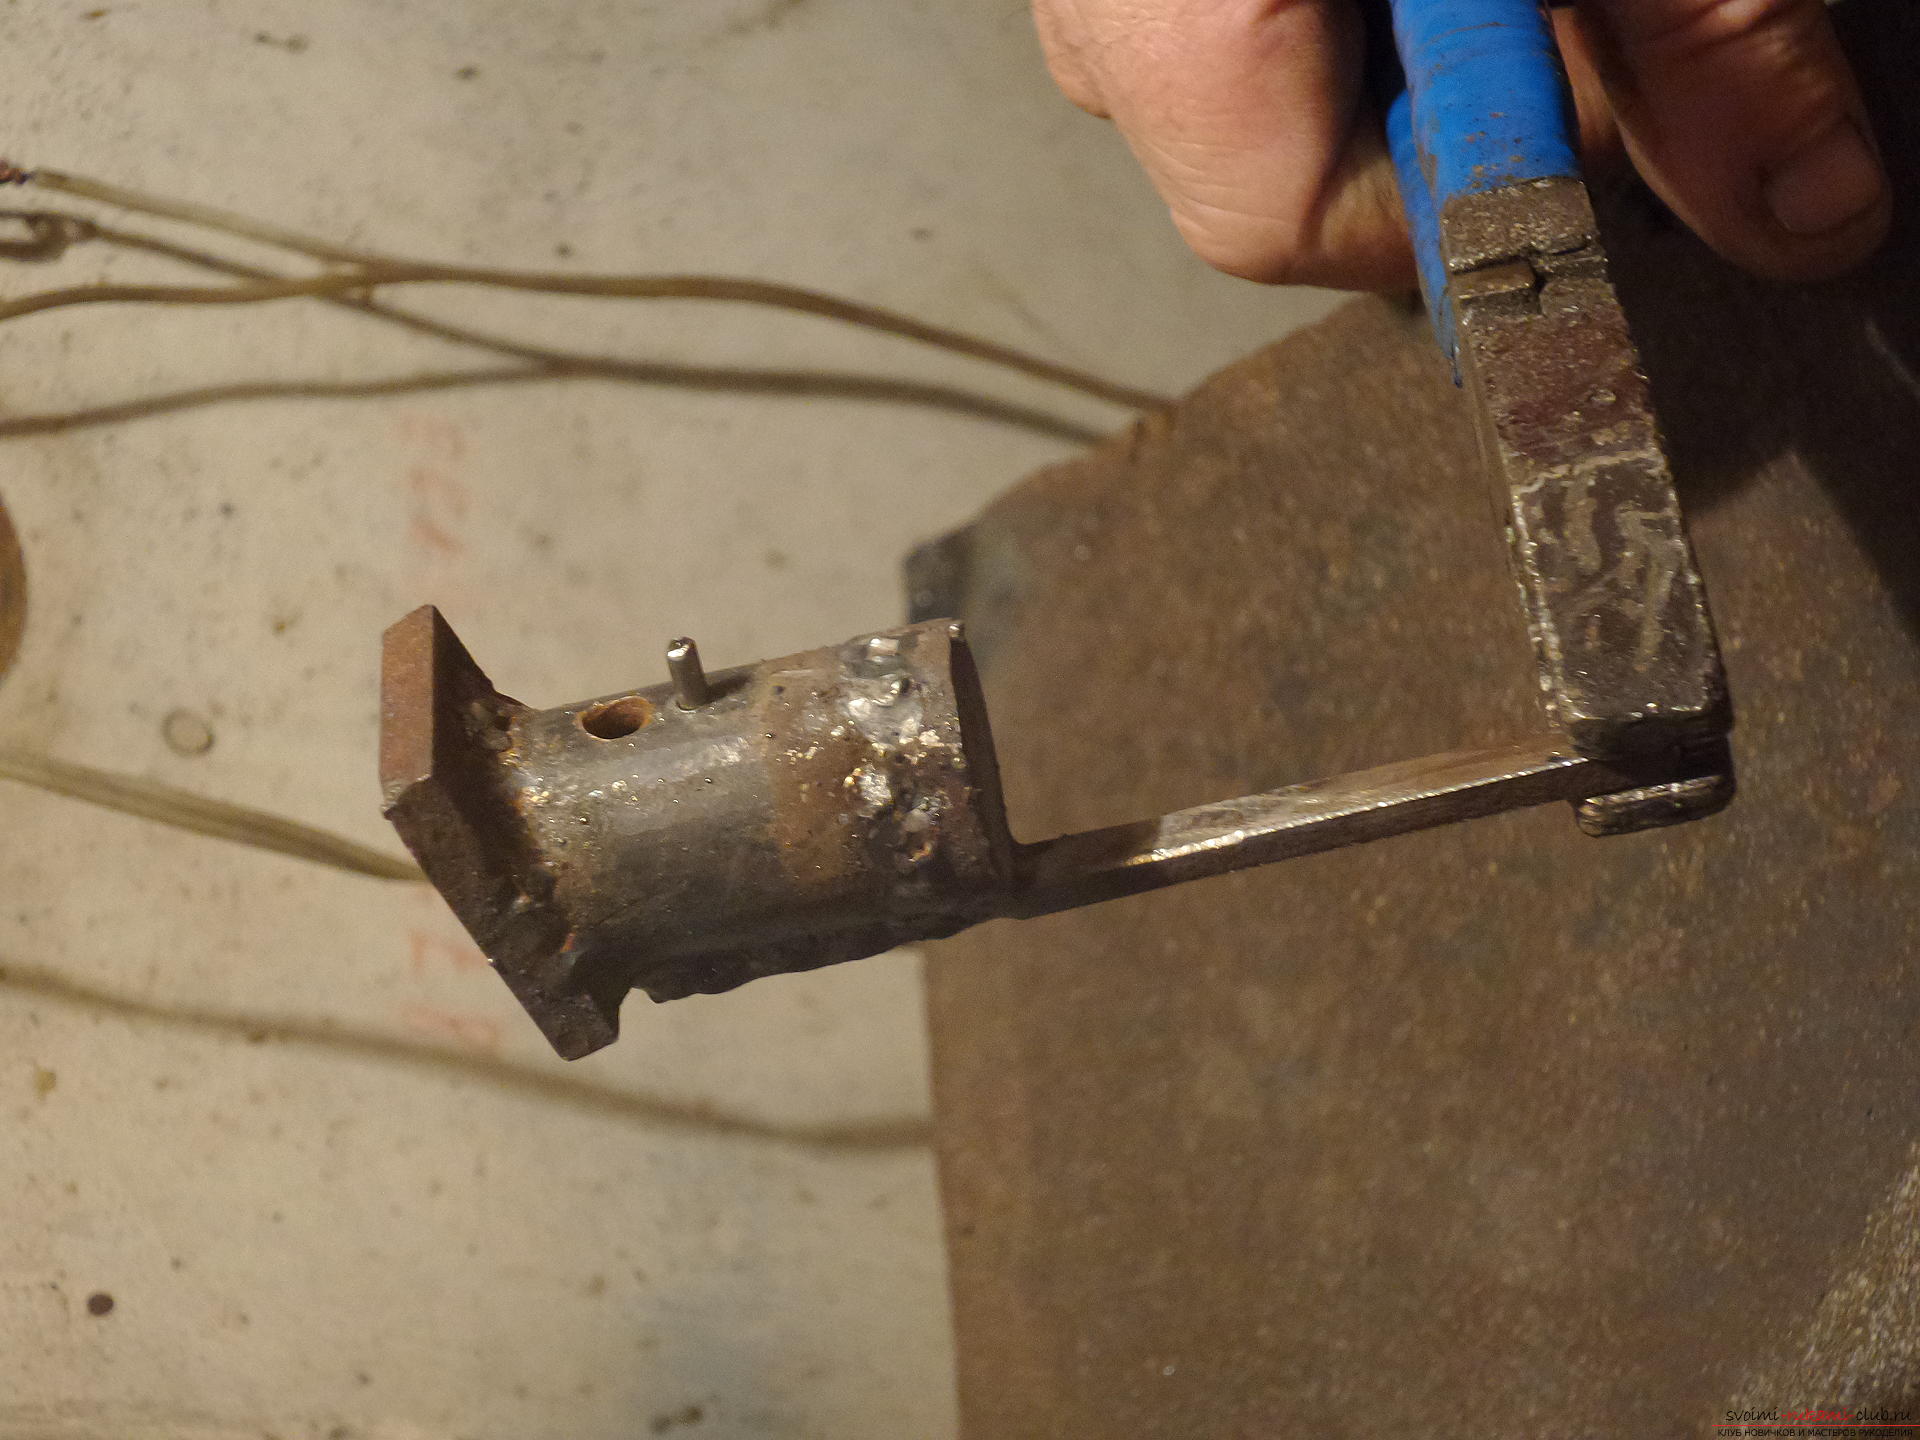 Этот мастер-класс научит как своими руками сделать необычный брелок для ключей - железный скворечник. Фото №24